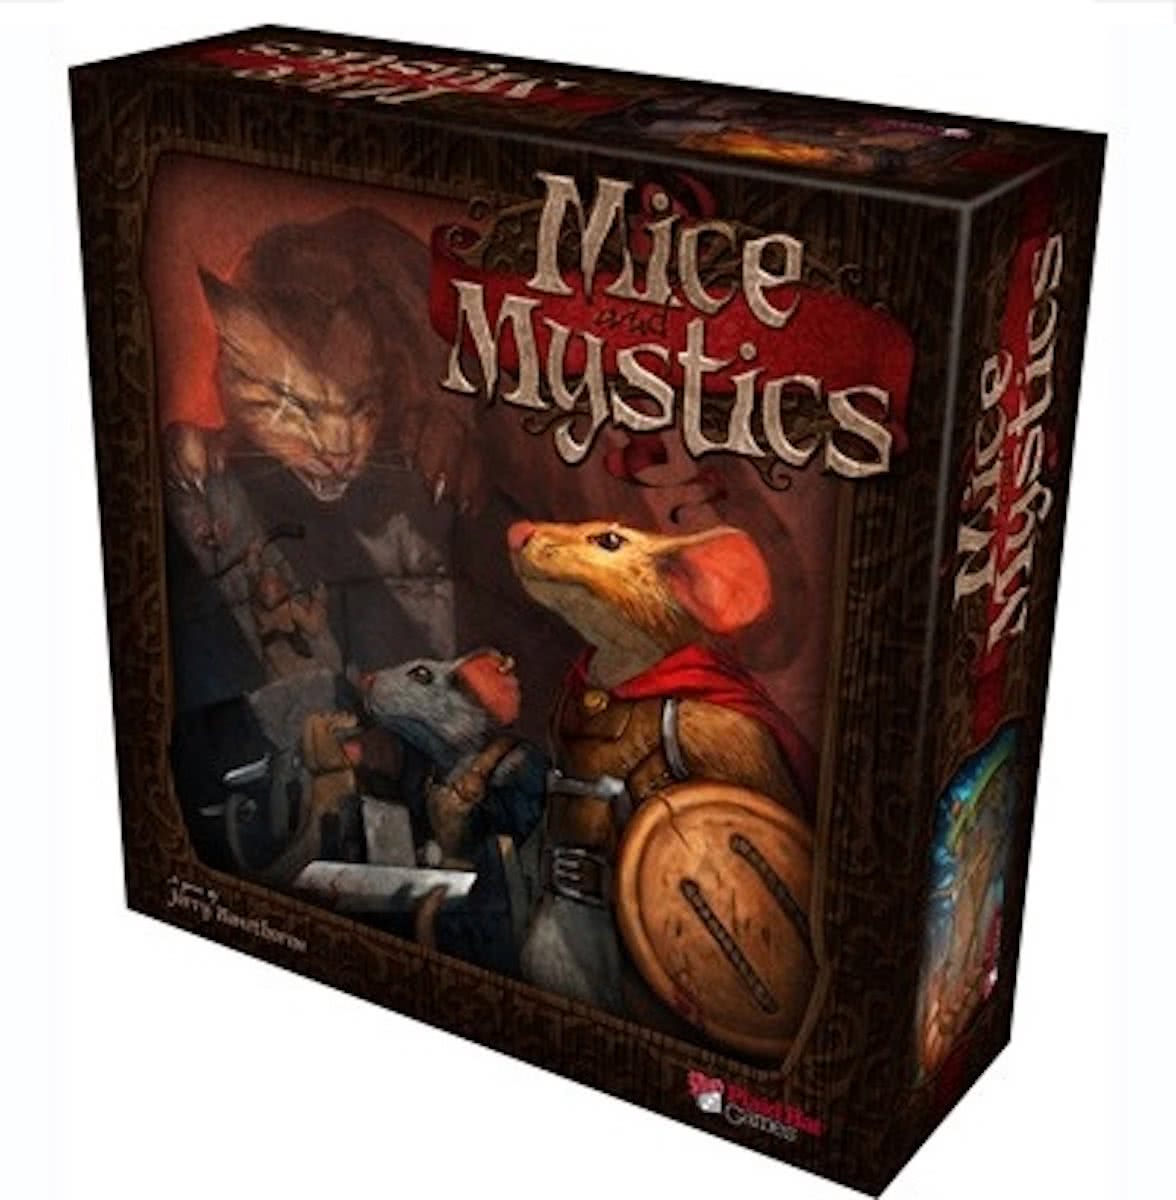 Mice and Mystics description reviews